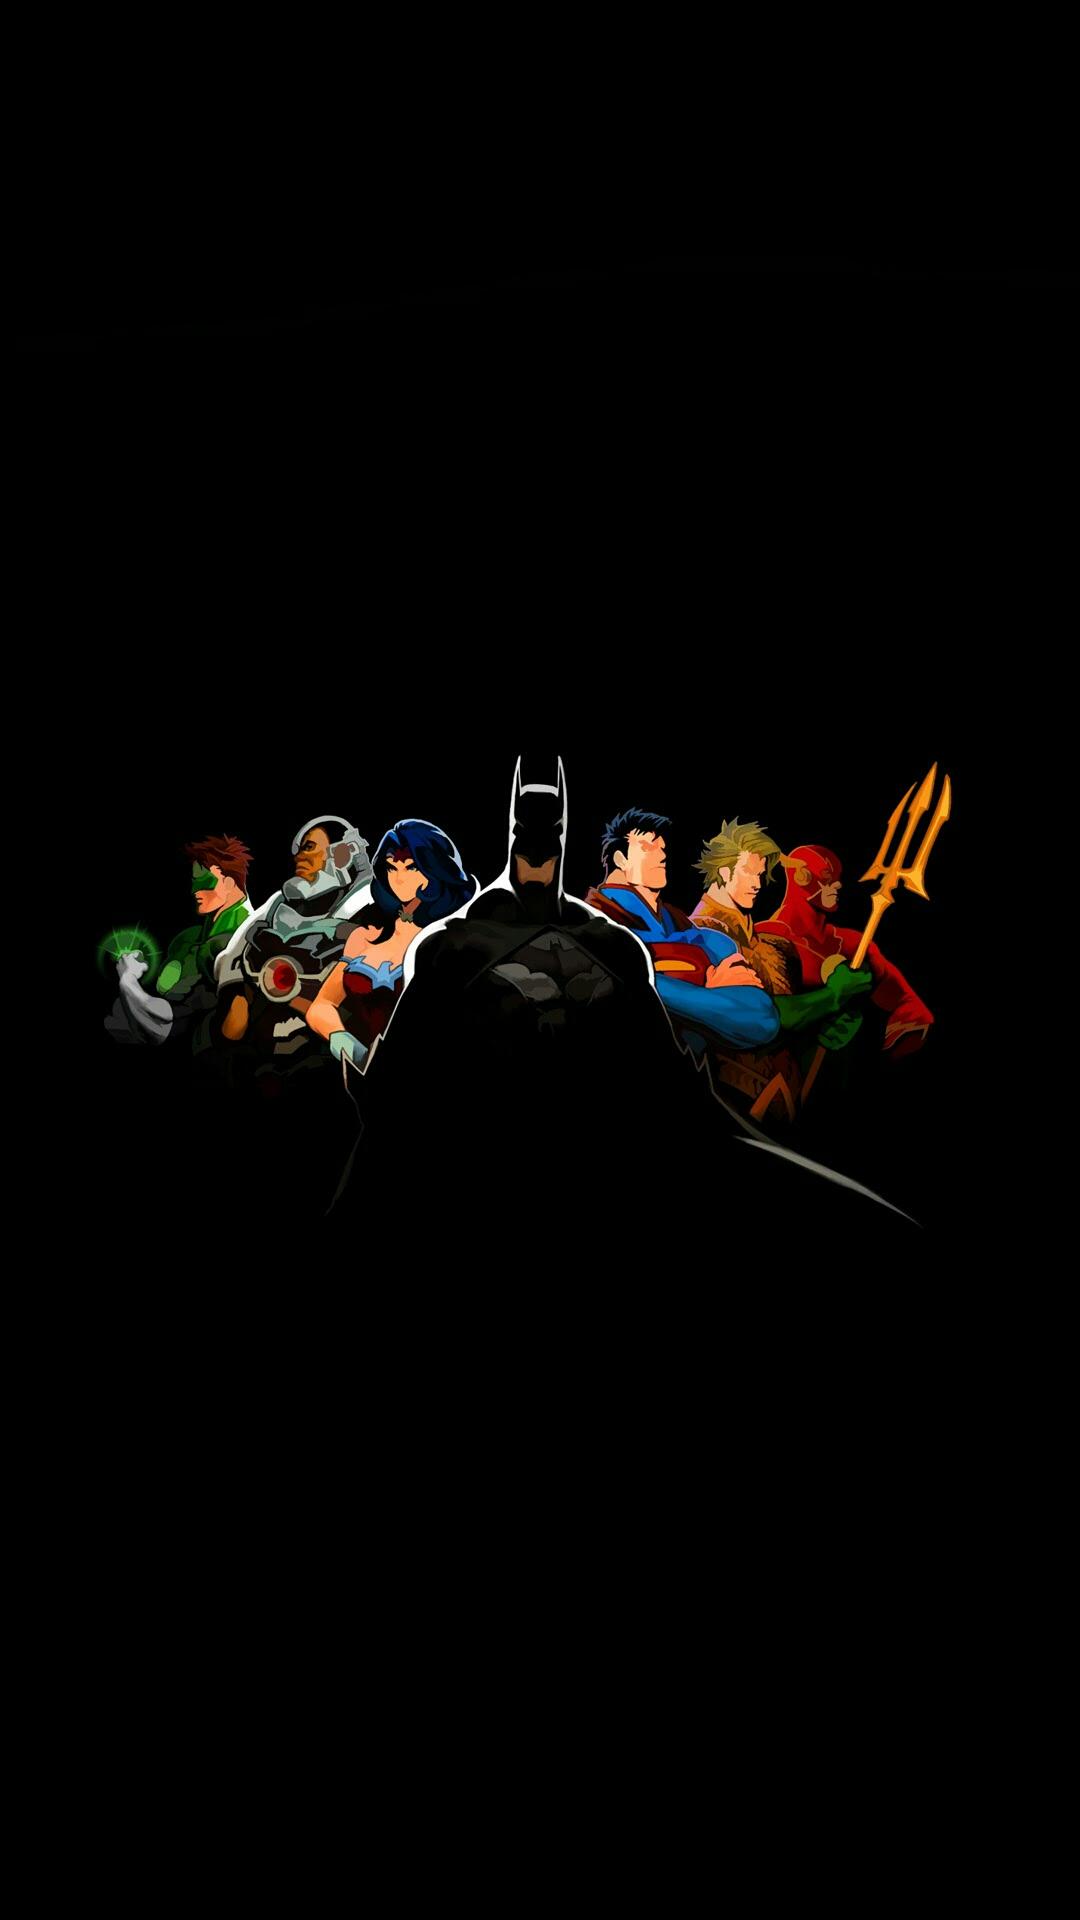 正义联盟,神奇女侠,蝙蝠侠,超人,1080x1920手机壁纸